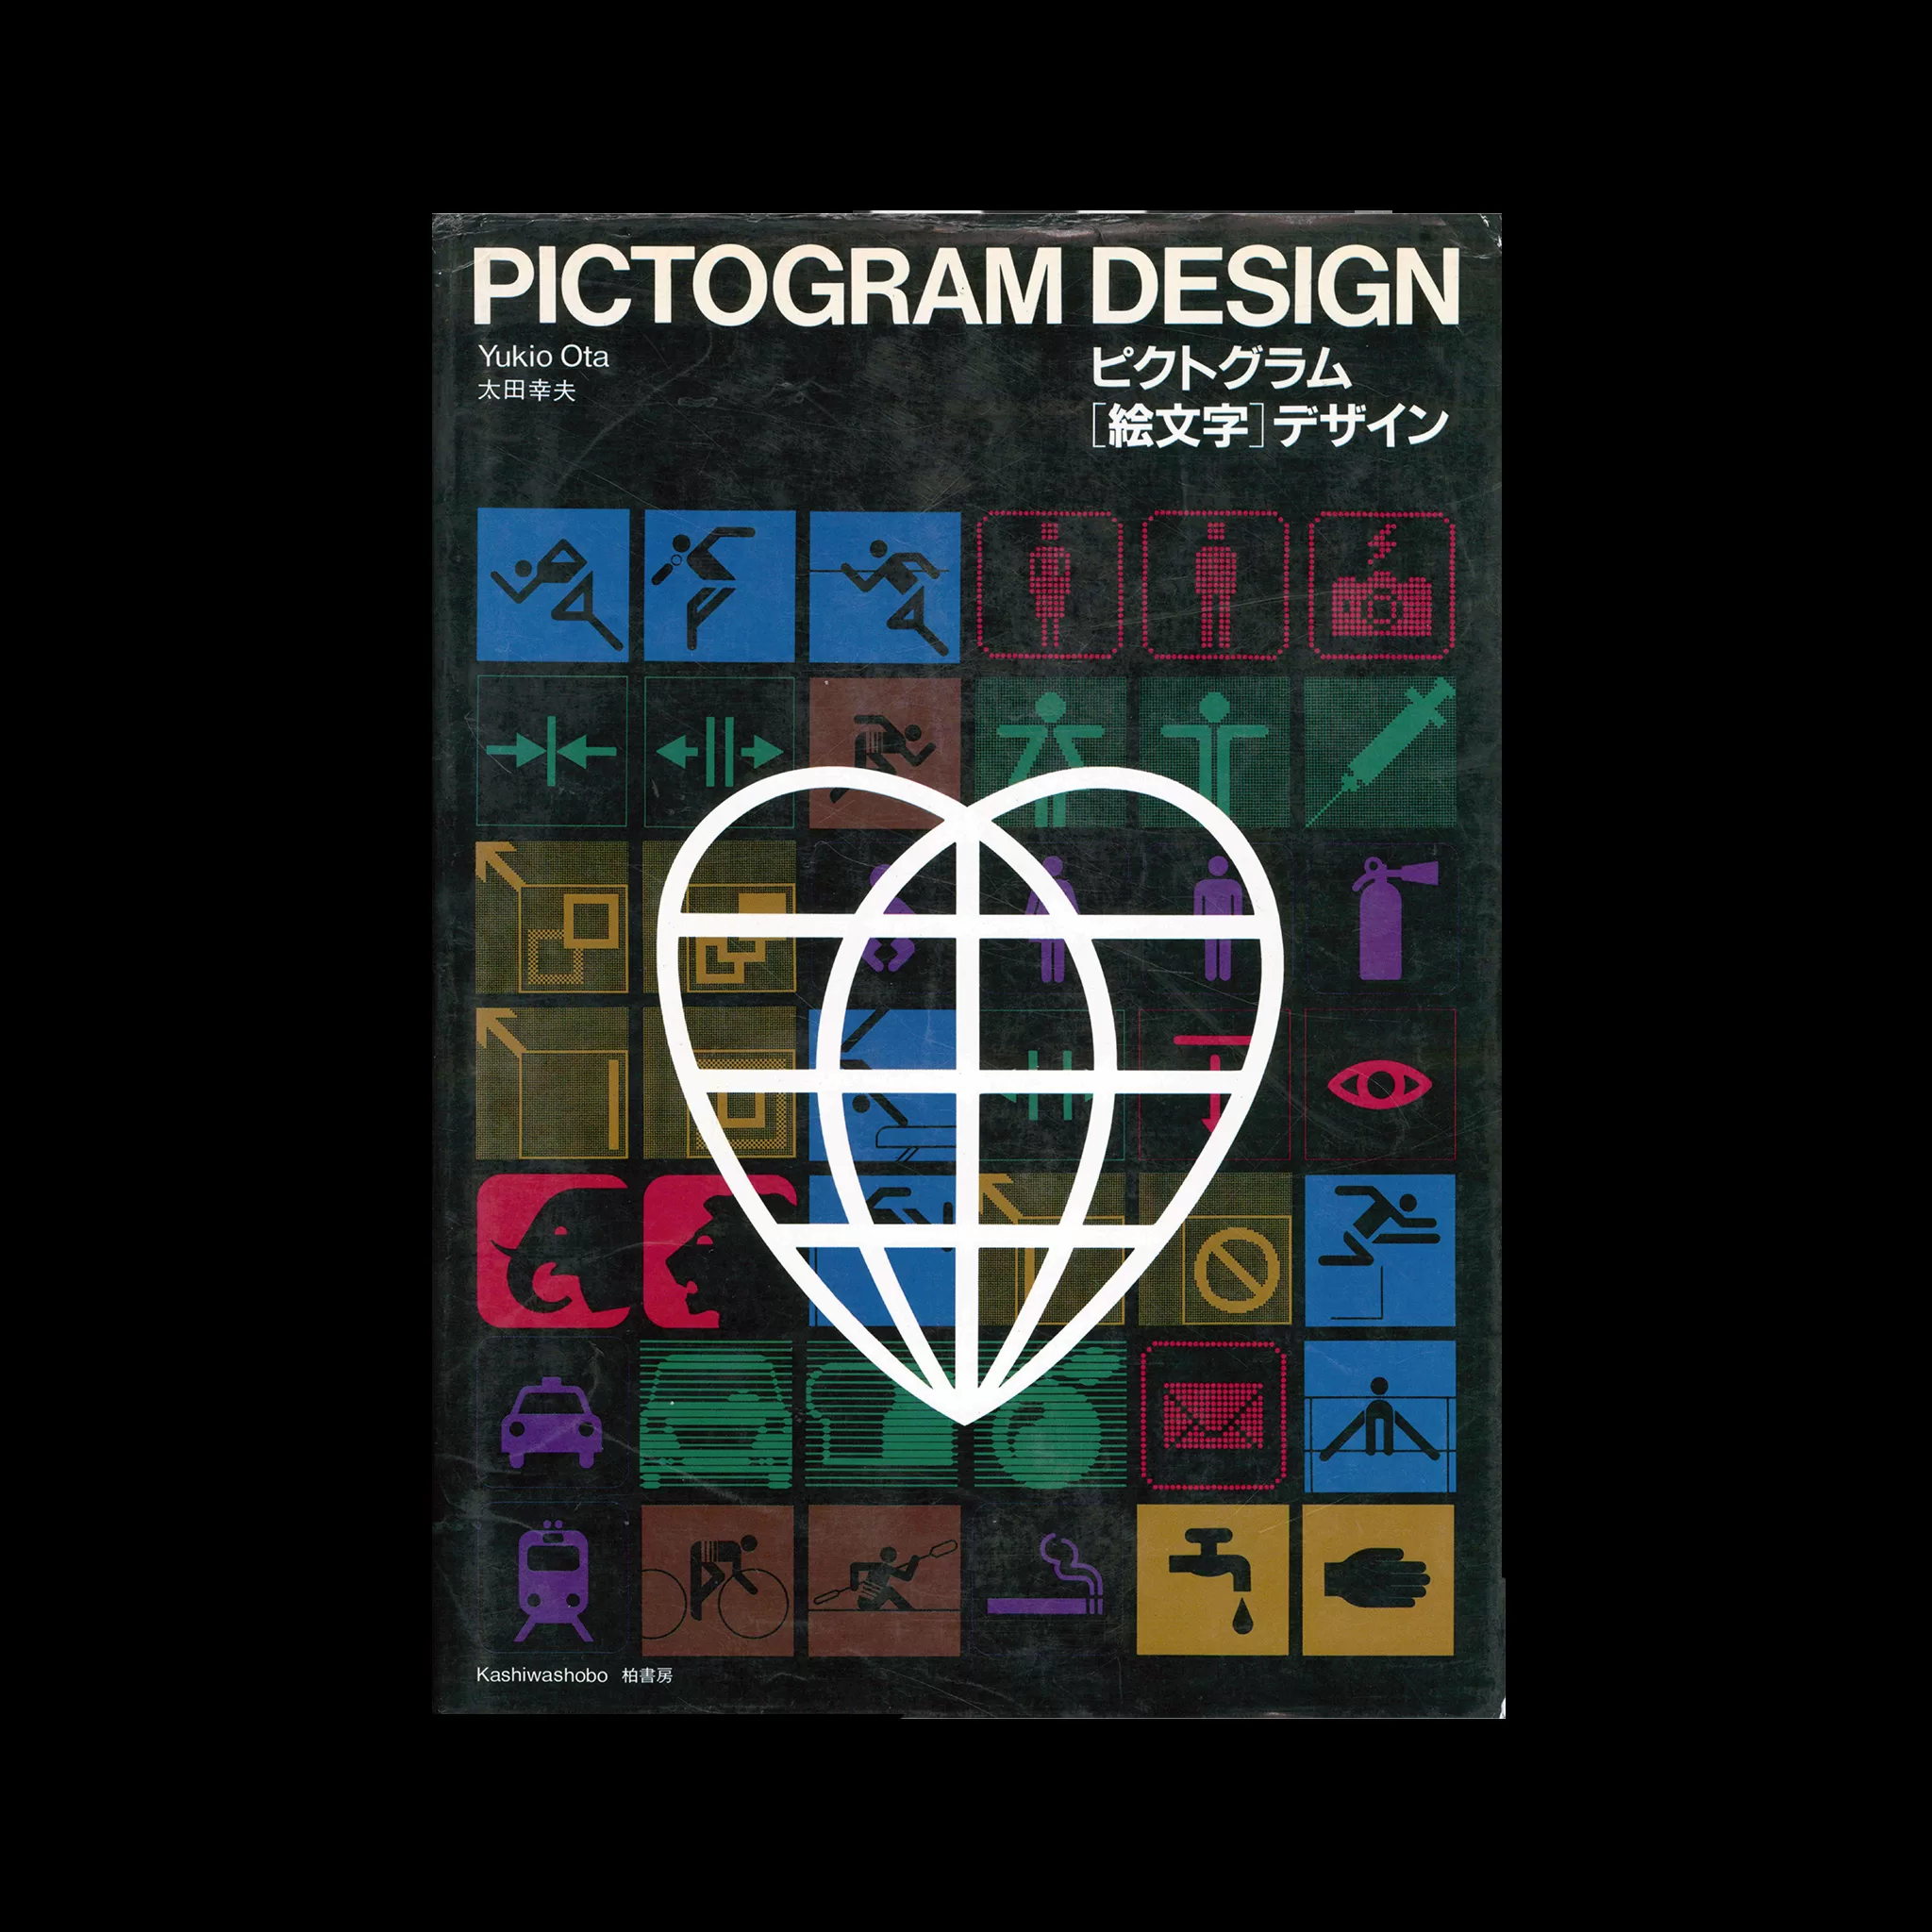 Pictogram Design, Yukio Ota, Kashiwashobo, 1987